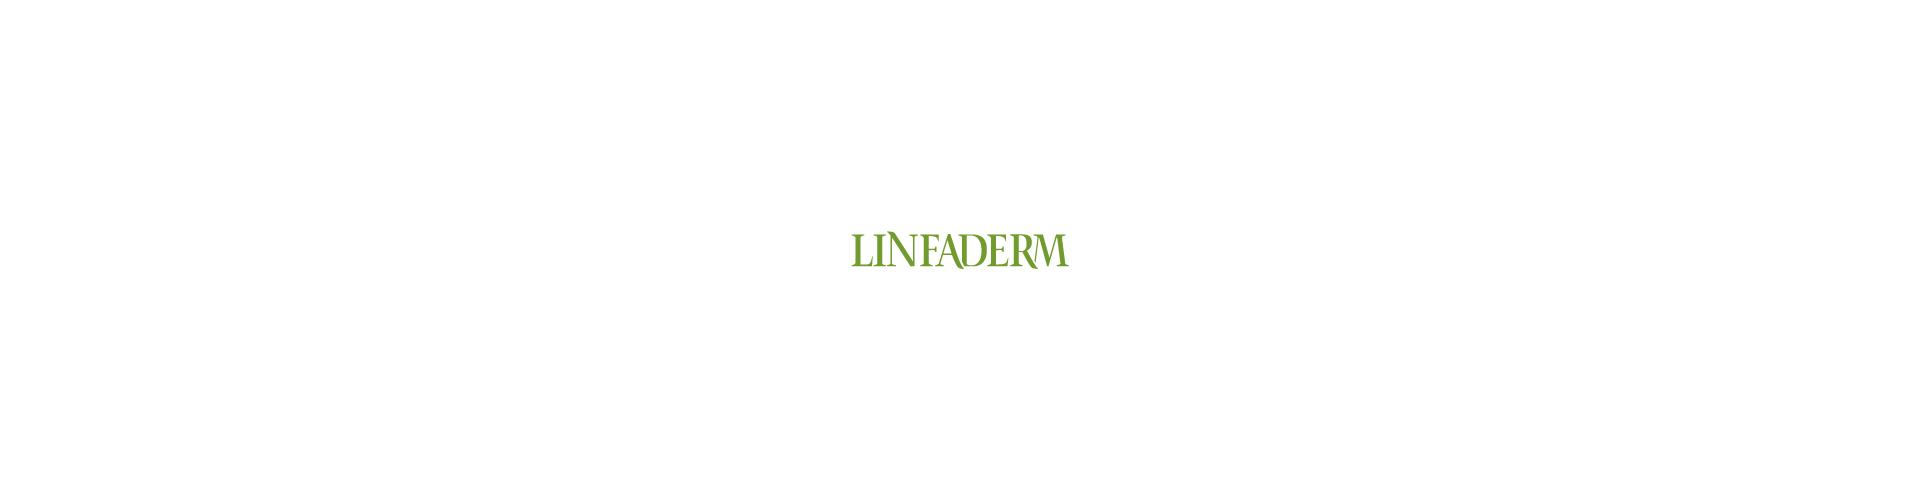 Linfaderm – Prodotti Cosmetici Naturali Artigianali per la cura del corpo, labbra, mani e viso.